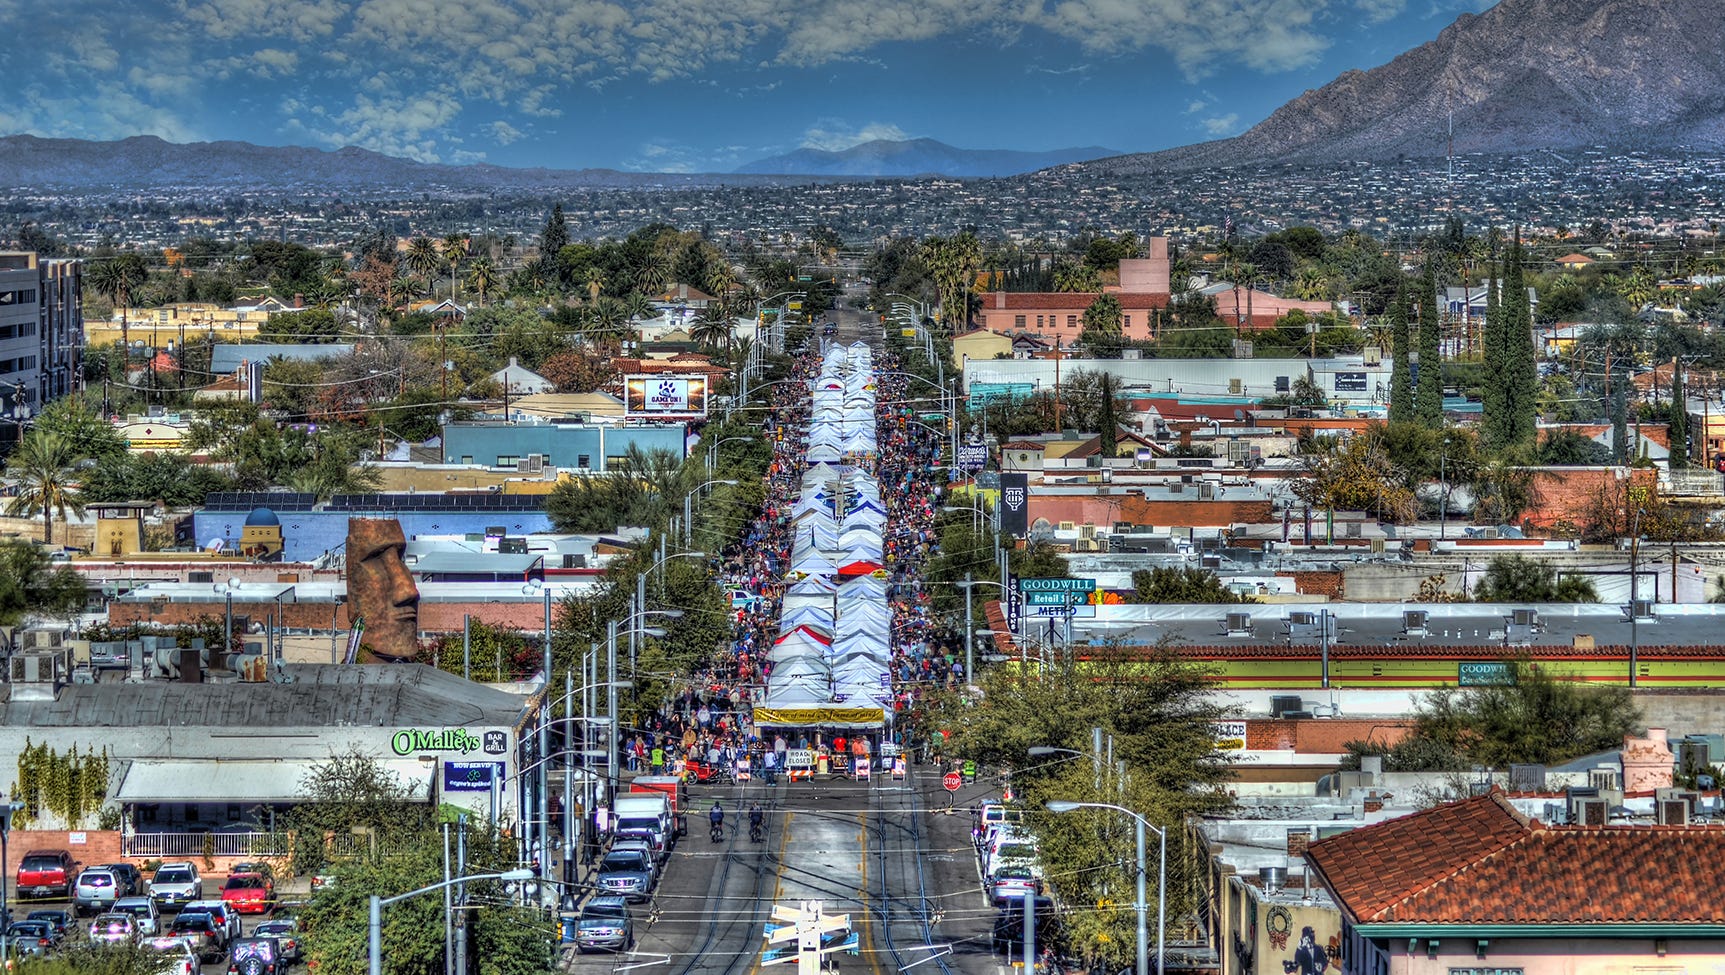 Tucson Fourth Avenue Winter Street Fair